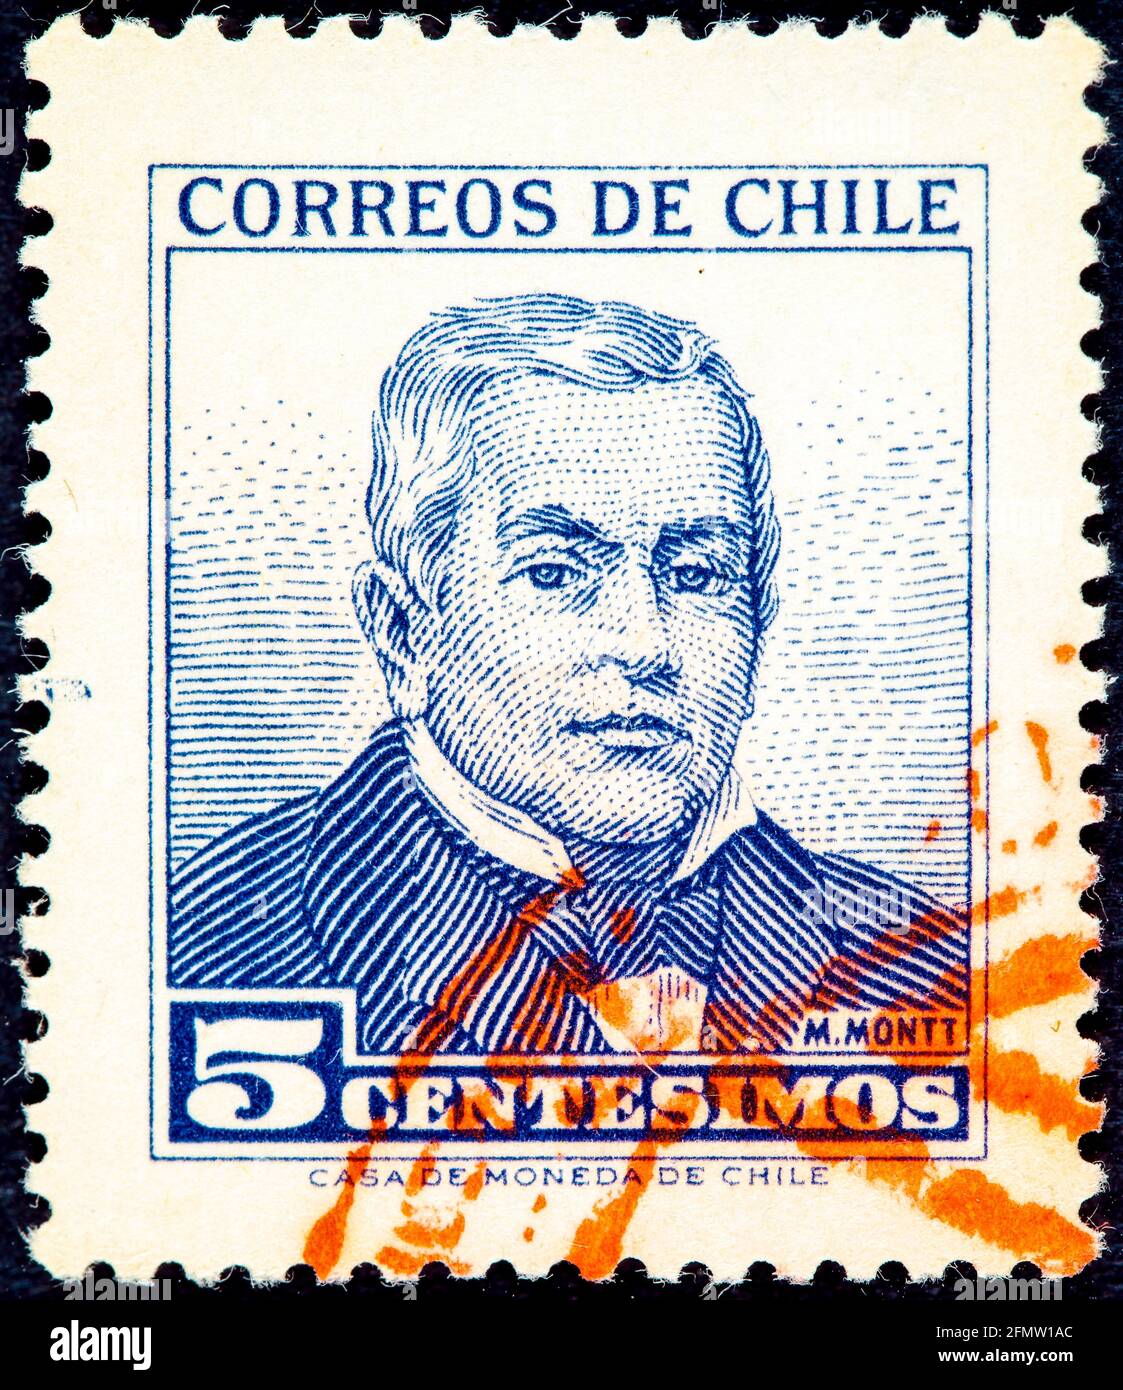 CHILI - VERS 1980: Un timbre imprimé au CHILI montre le portrait d'image Pedro Elias Pablo Montt Montt (Santiago Chili juin 29 1849 - août 16 1910) était un C Banque D'Images